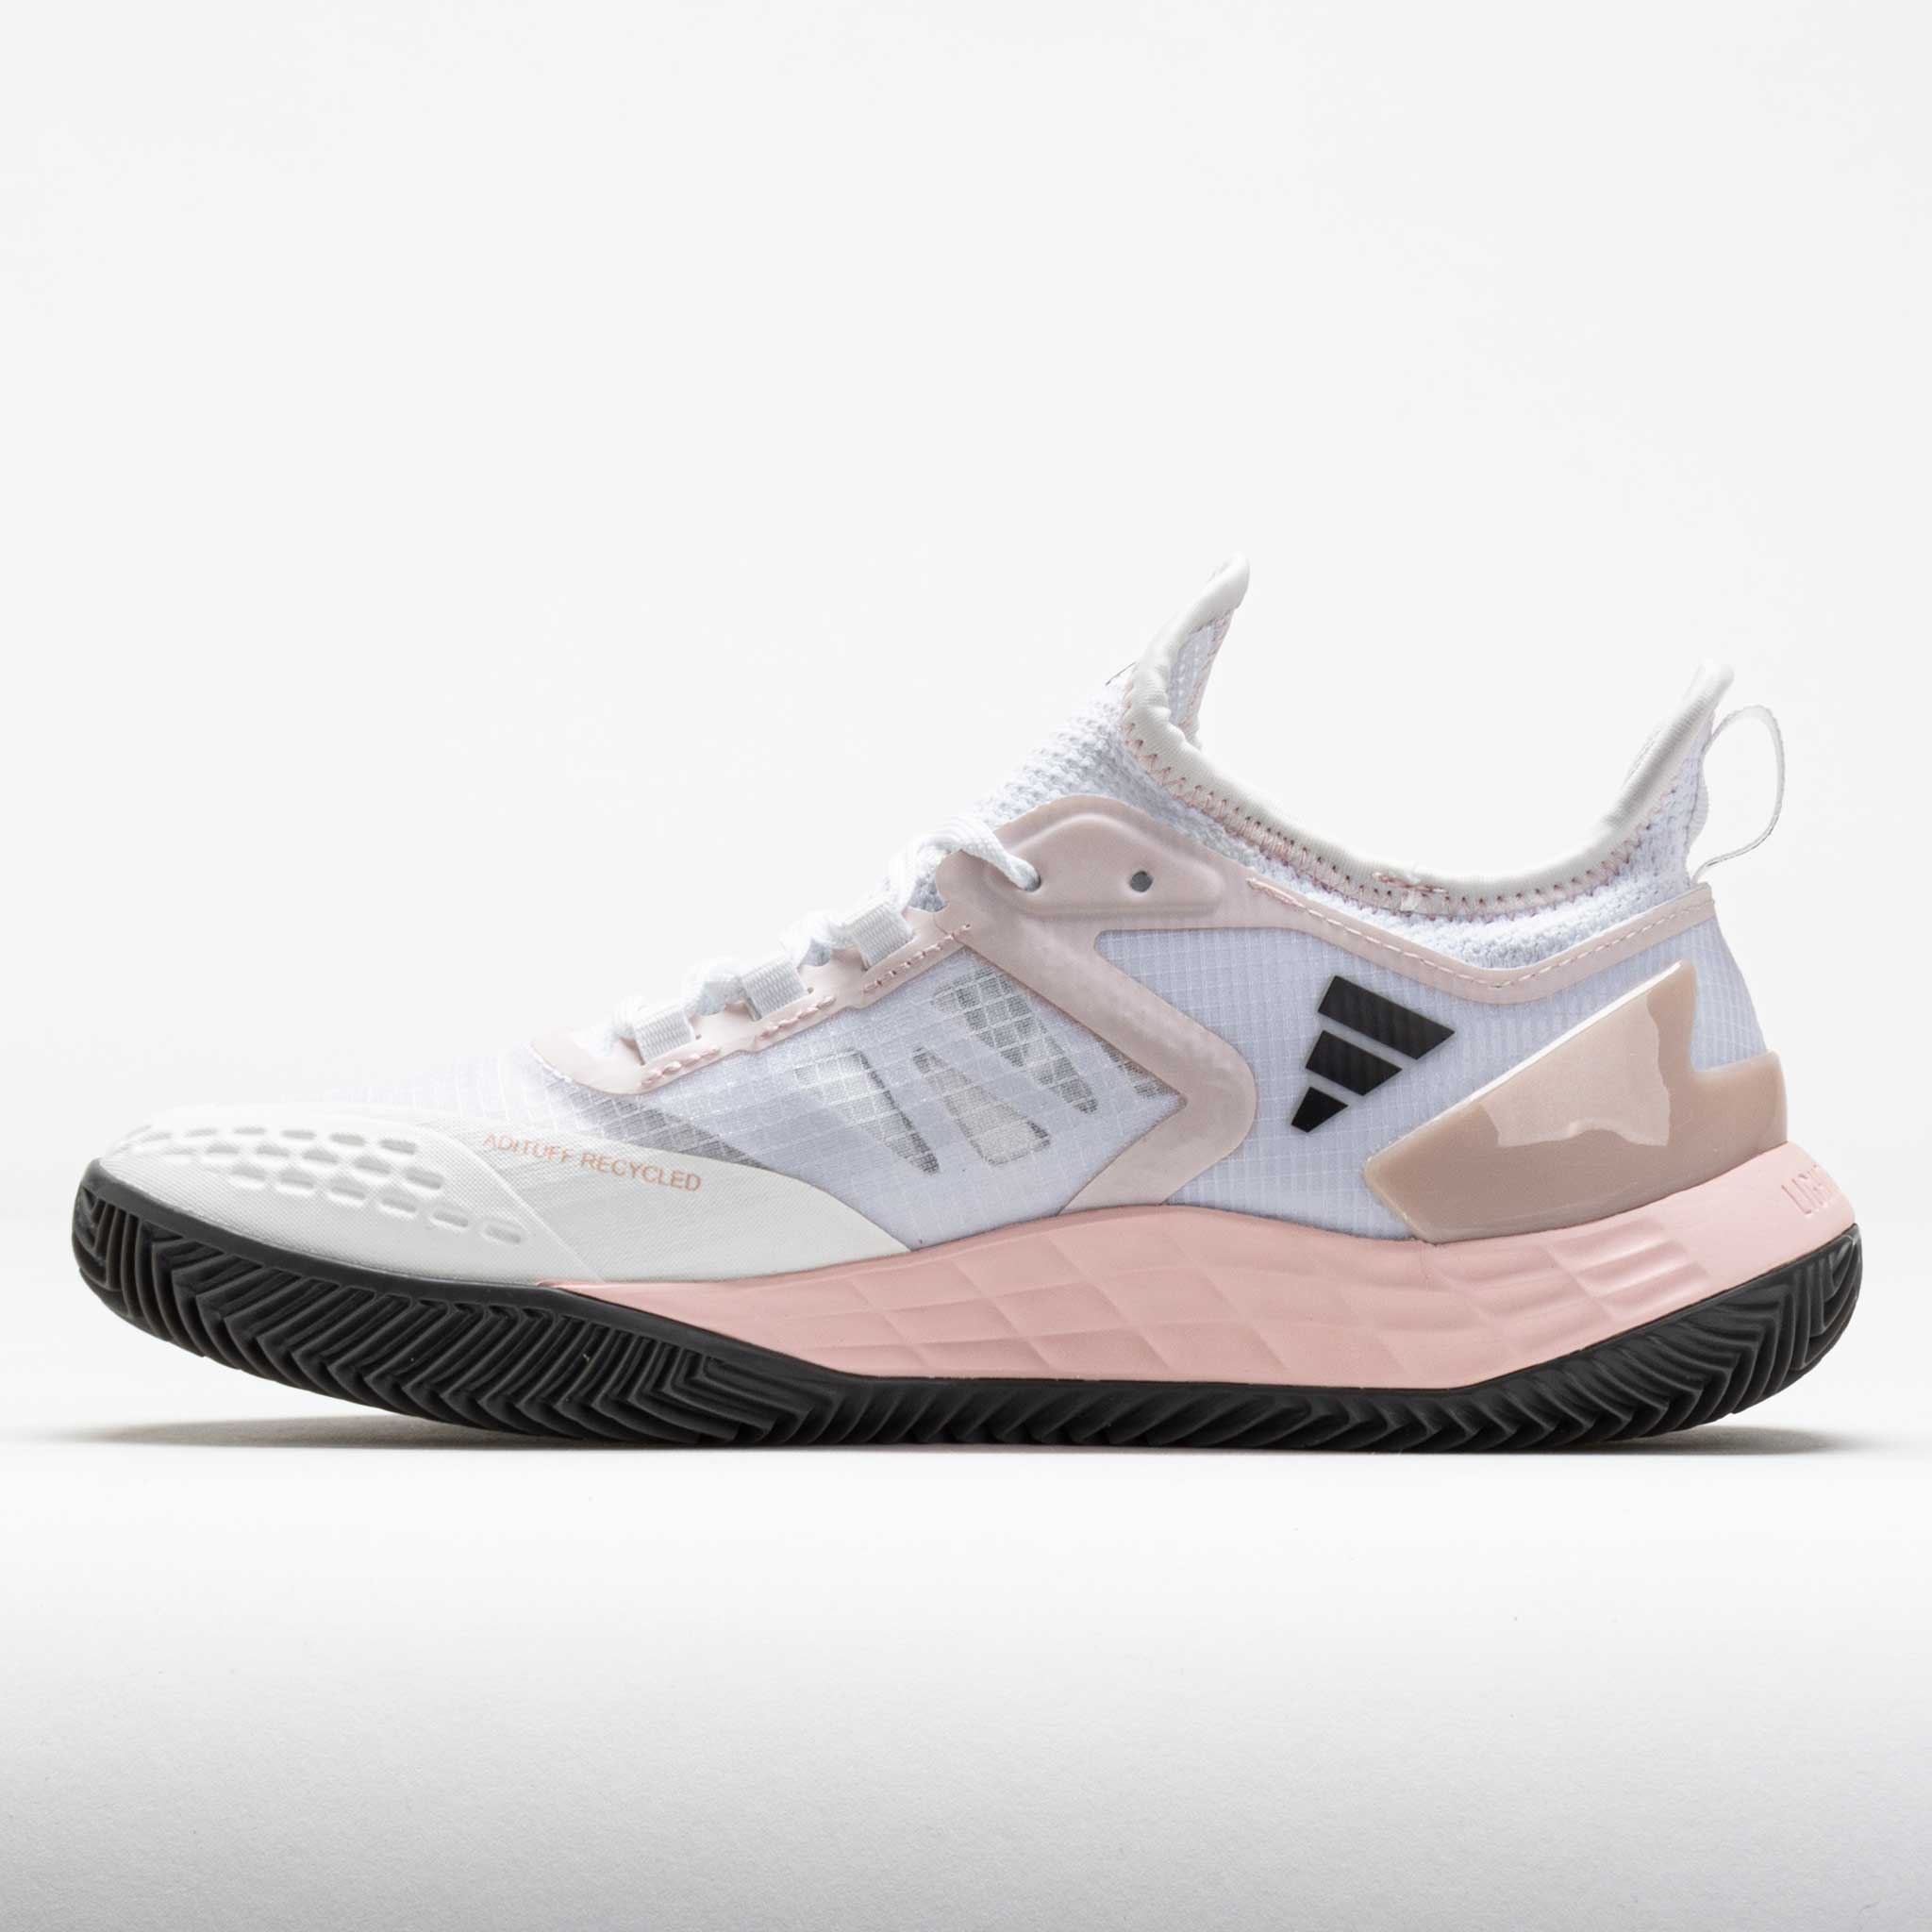 adidas adizero Ubersonic 4.1 Clay Women's White/Grey/Pink Metallic